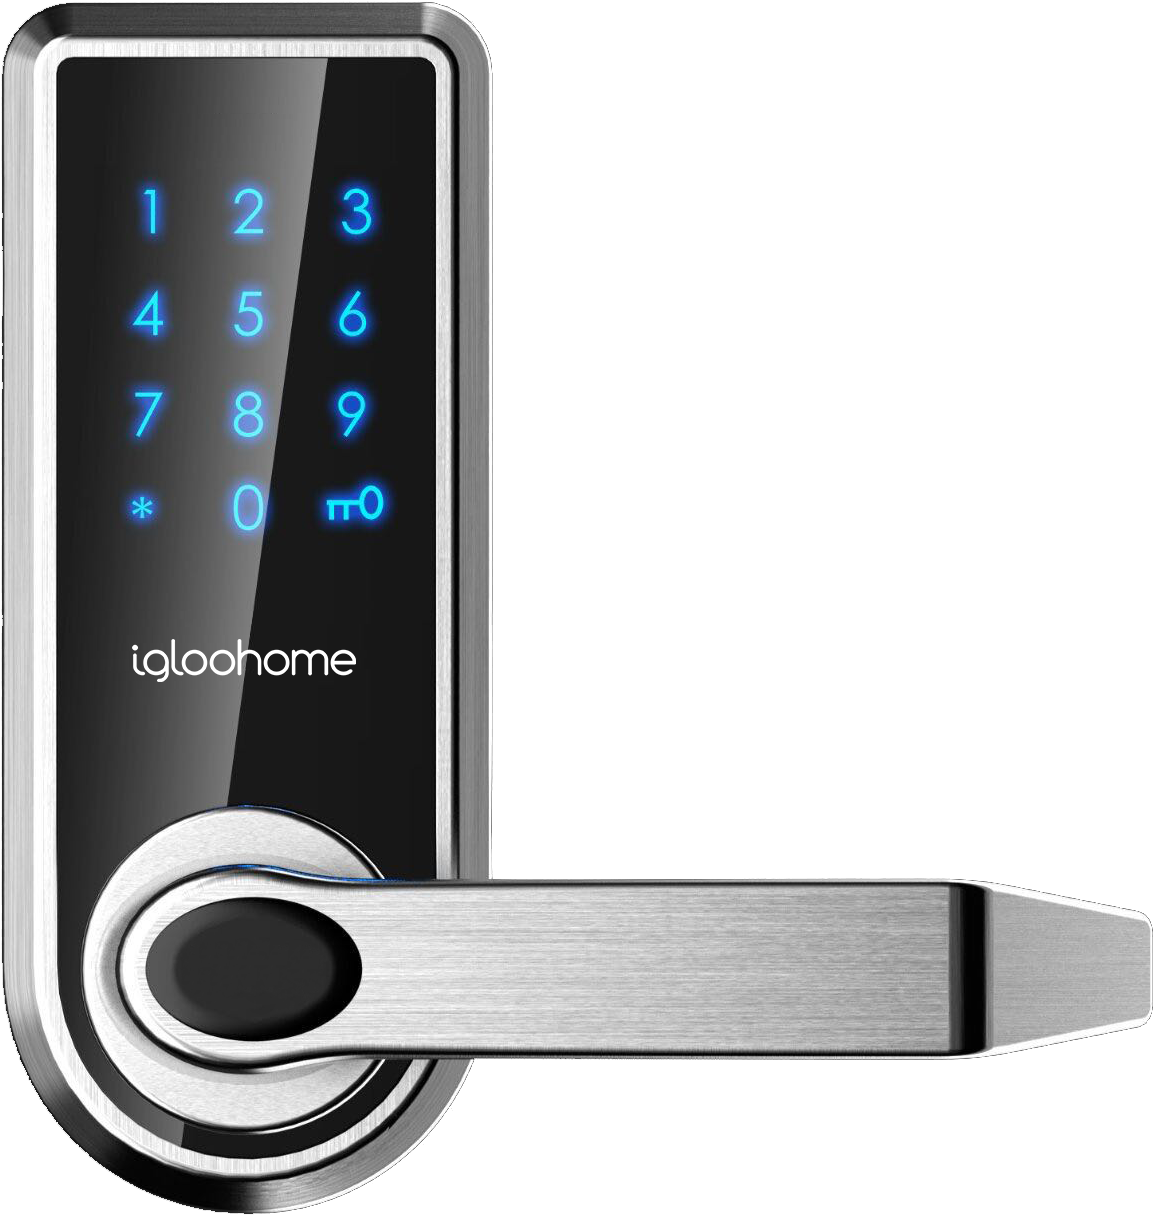 How The Igloohome Smart Lock Works Offline - Smart Door Lock Png Transparent Clipart (1253x1280), Png Download